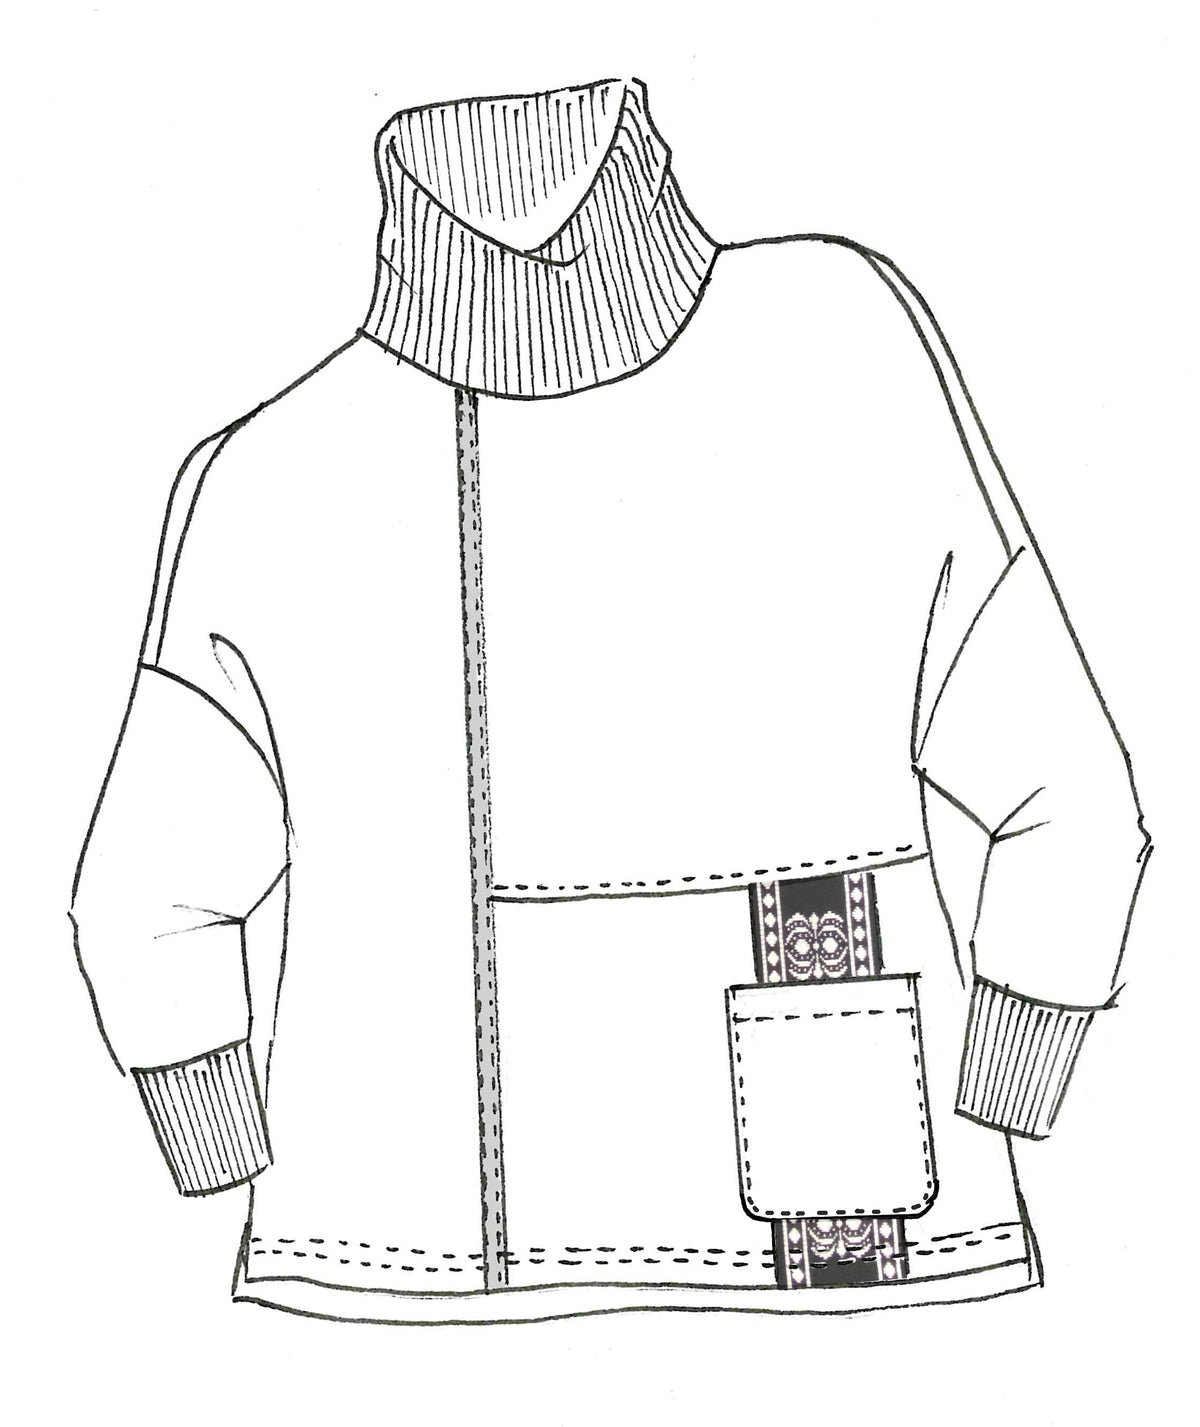 Paula Ryan Roma Merino And Leather Trim Sweater - Winter White